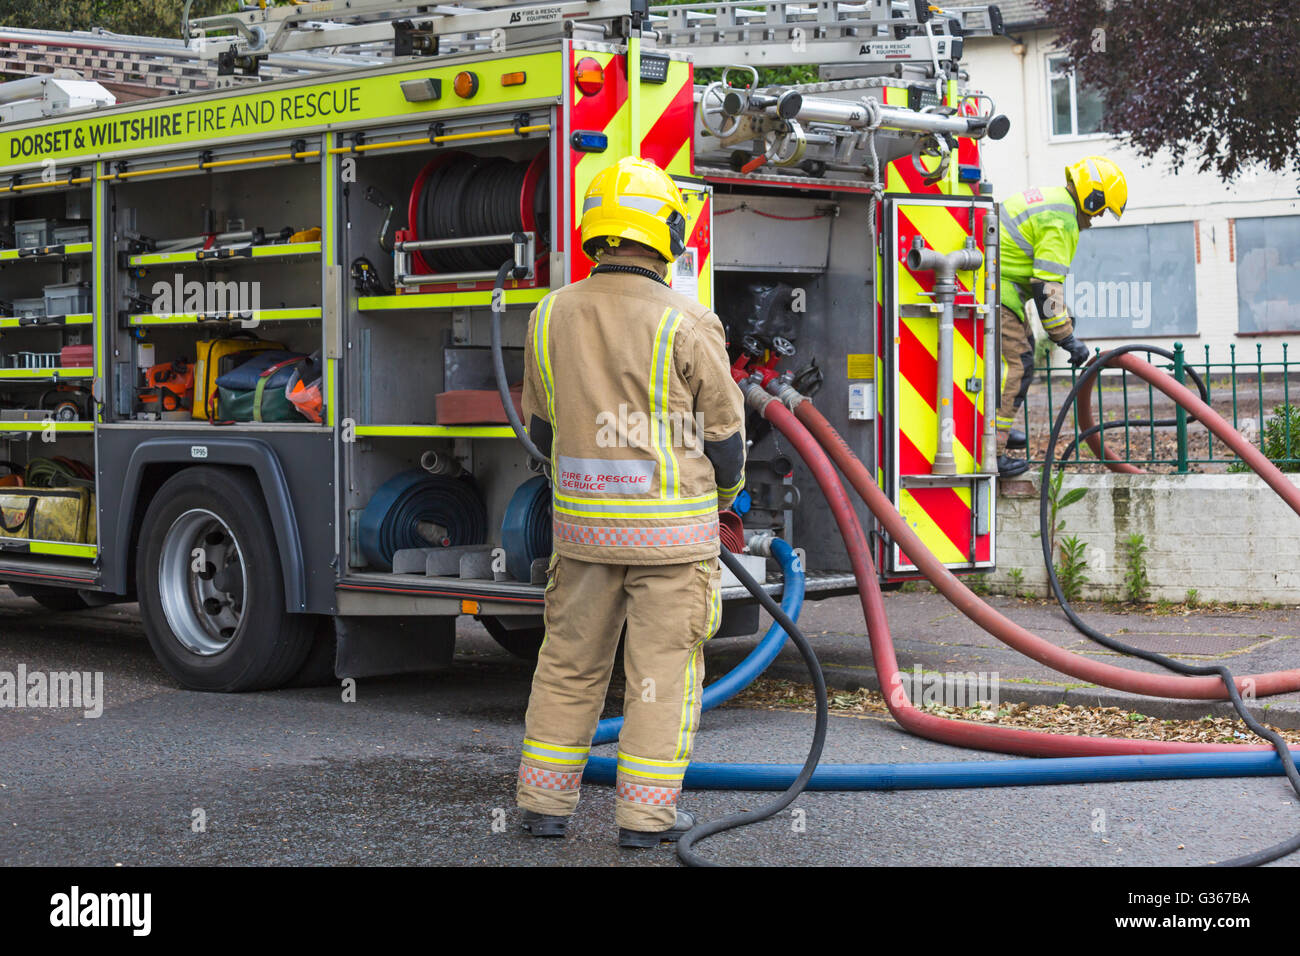 Pompiers Dorset & Wiltshire pompiers pompiers et pompiers pompiers pompiers pompiers sur scène de feu à l'hôtel Belvedere, Bath Road, Bournemouth, Dorset Royaume-Uni en juin - pompier Banque D'Images